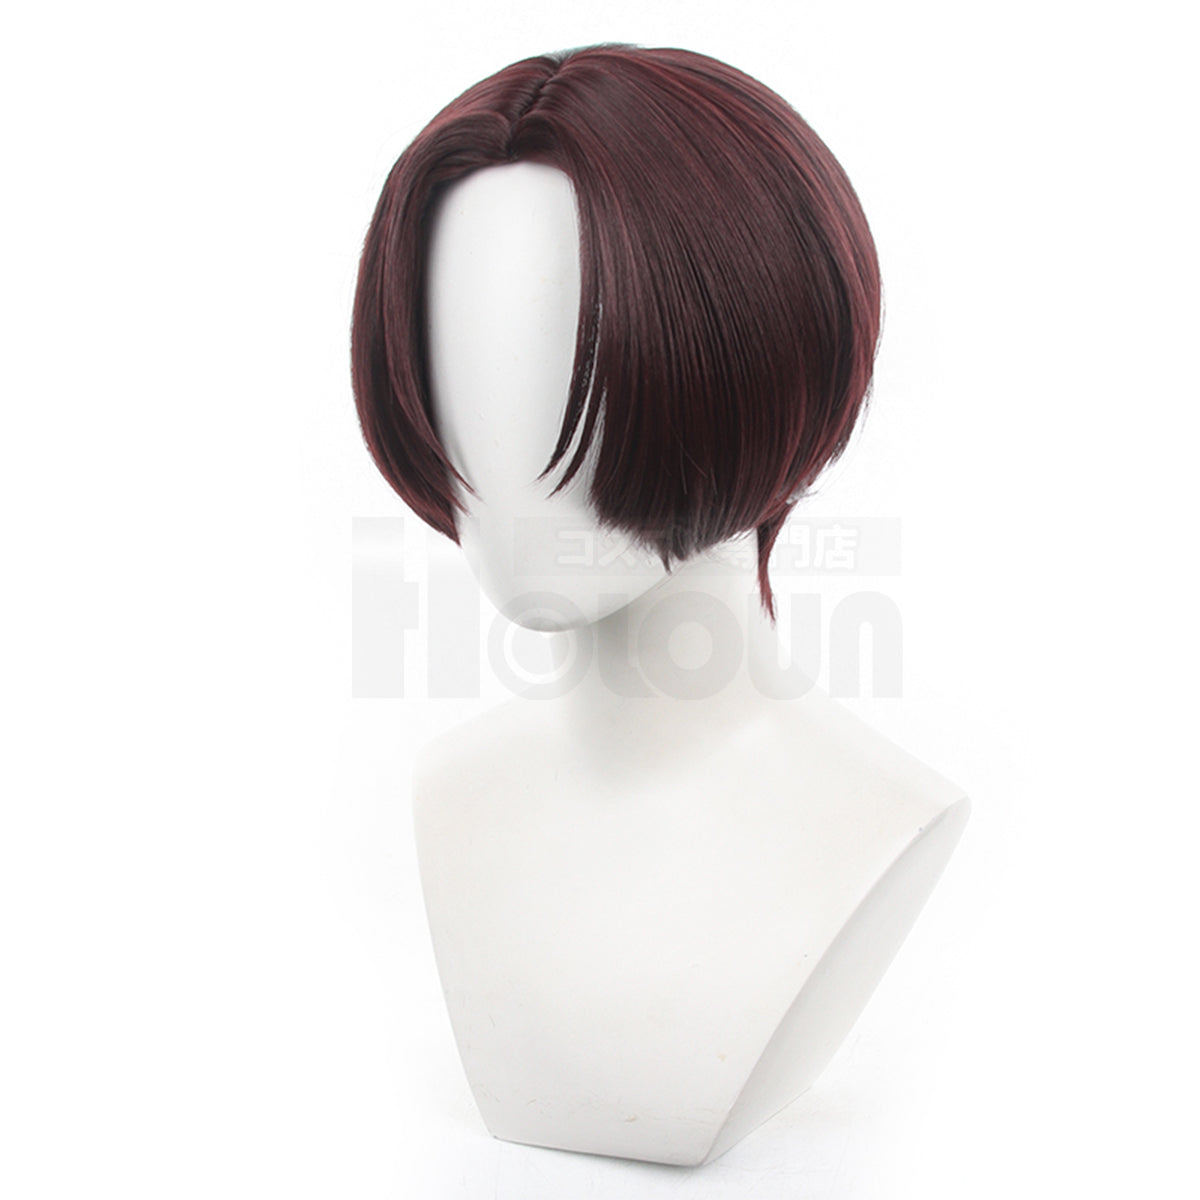 HOLOUN Wind Breaker Anime Hayato Suo Cosplay Wig Rose Net Synthetic Fiber Adjustable Size Halloween Gift